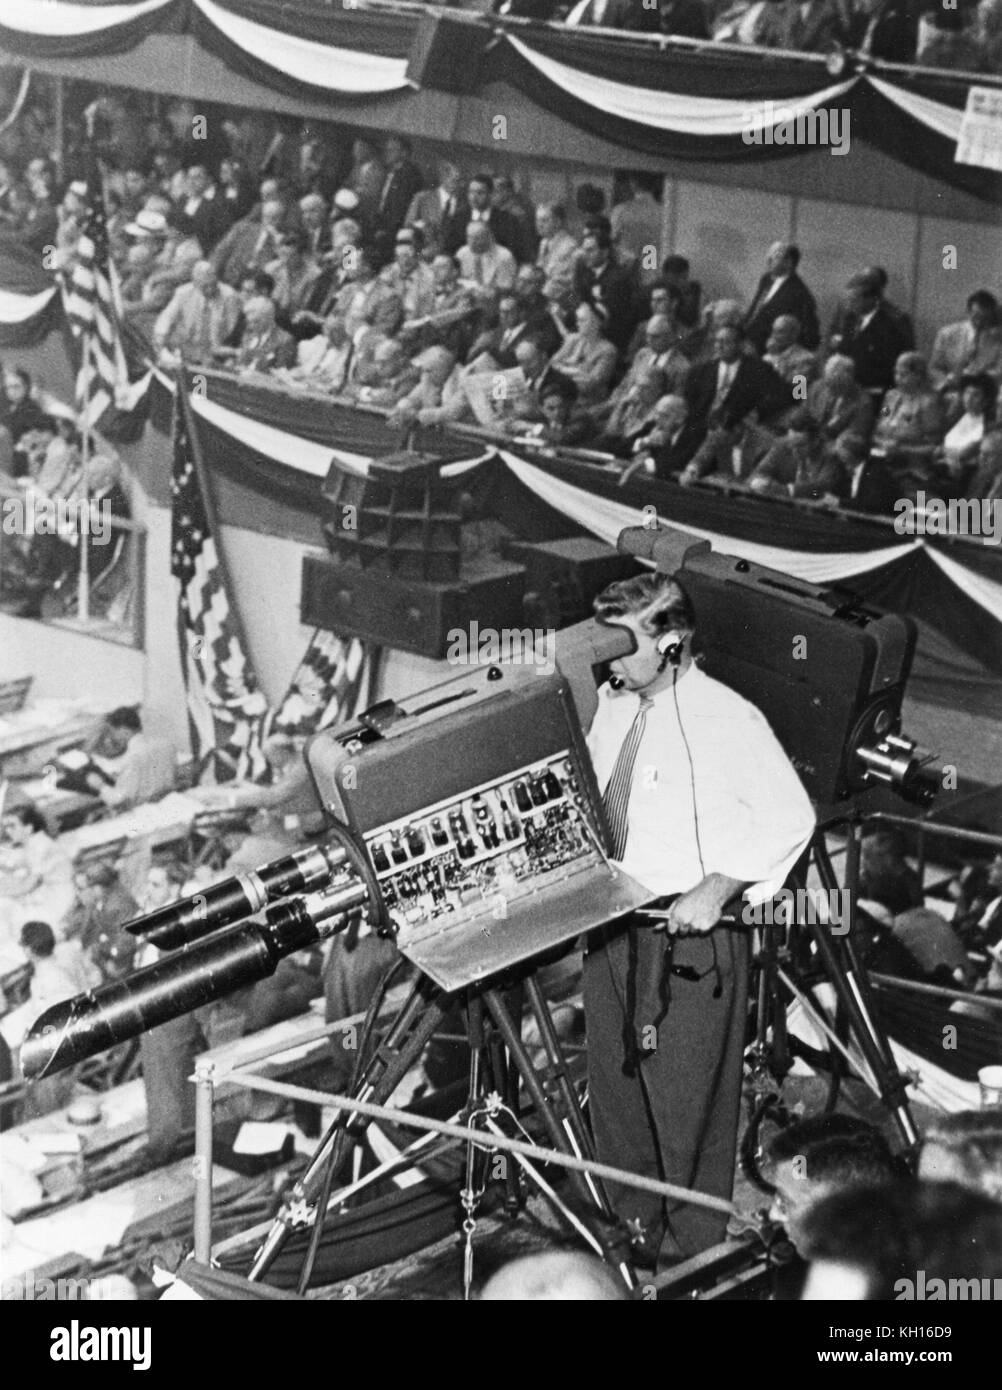 Soixante-dix-sept caméras de télévision de travail couverts les délégués à la Convention nationale démocrate de 1952 tenue à l'Amphithéâtre International, Chicago, IL, 07/1952. Banque D'Images